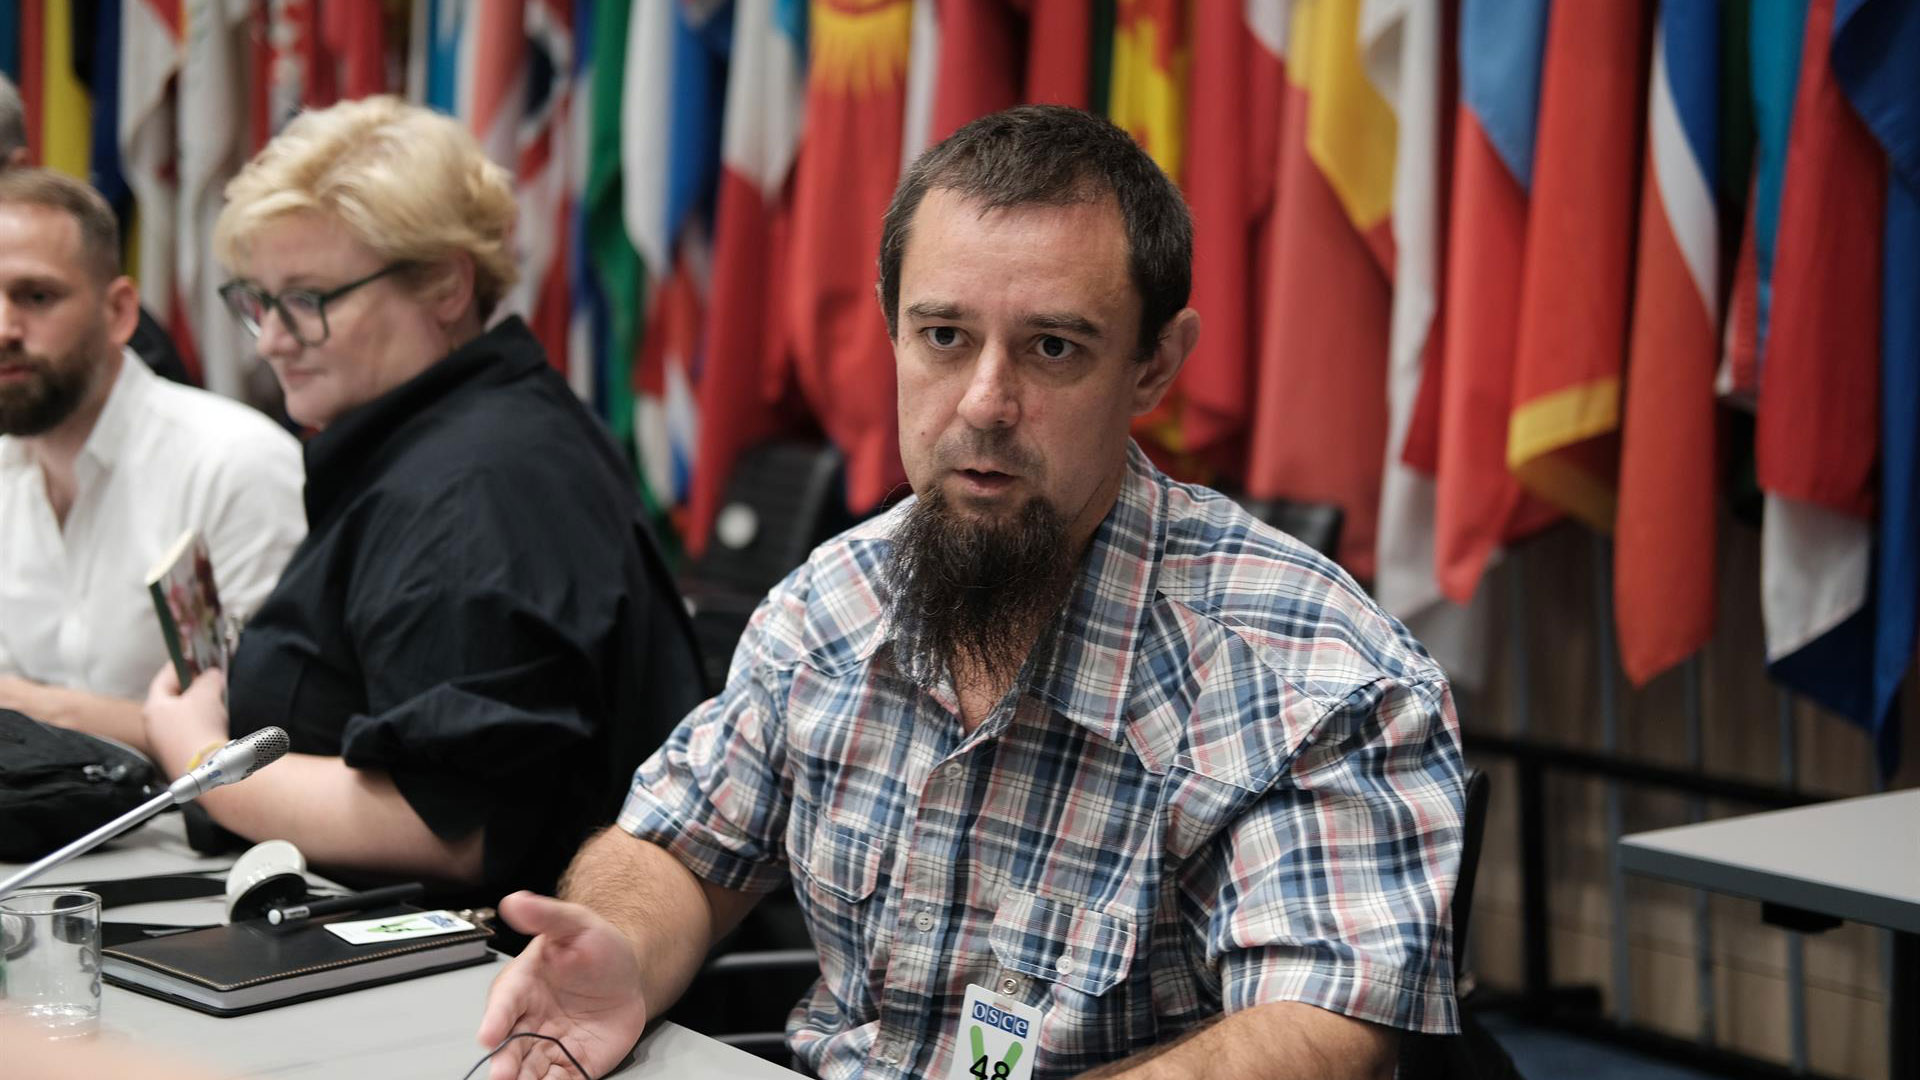  Yurii Berezovski, un profesor de música de la localidad de Starobilsk, una zona de Lugansk ocupada por Rusia desde marzo, describe su experiencia en un campo de filtración ruso d urante un evento en la sede de la Organización para la seguridad y la Cooperación en Europa (OSCE) en Viena (Austria). EFE/ Luis Lidón